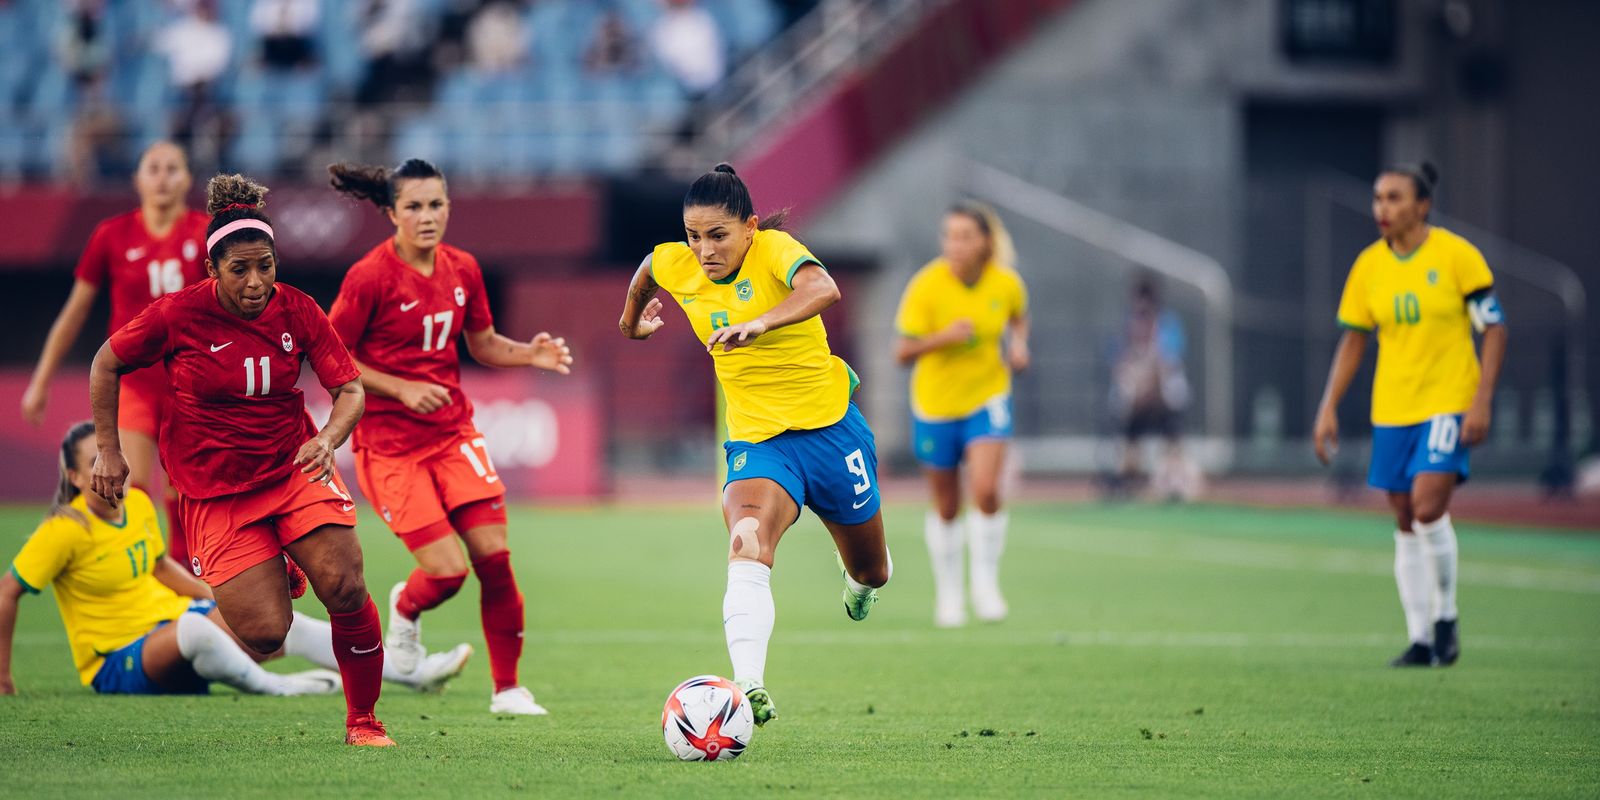 Jogando na Vila Belmiro, Brasil perde para o Canadá no futebol